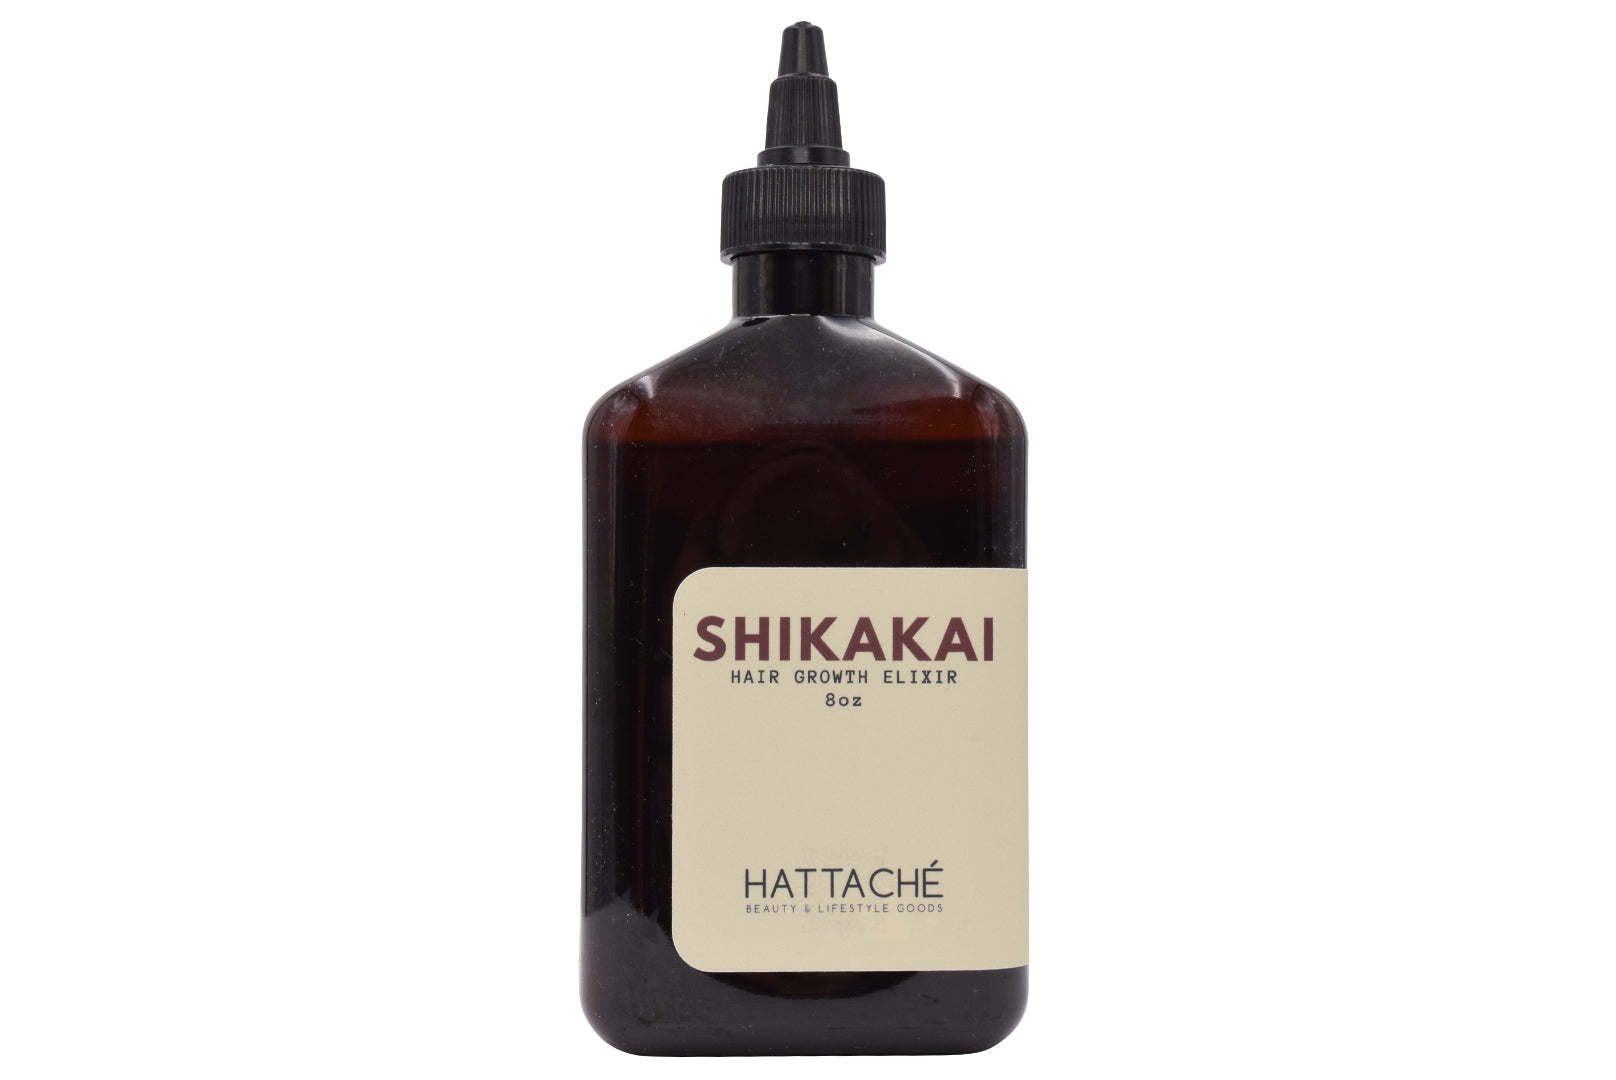 Hattache Shikakai Hair Growth Elixir